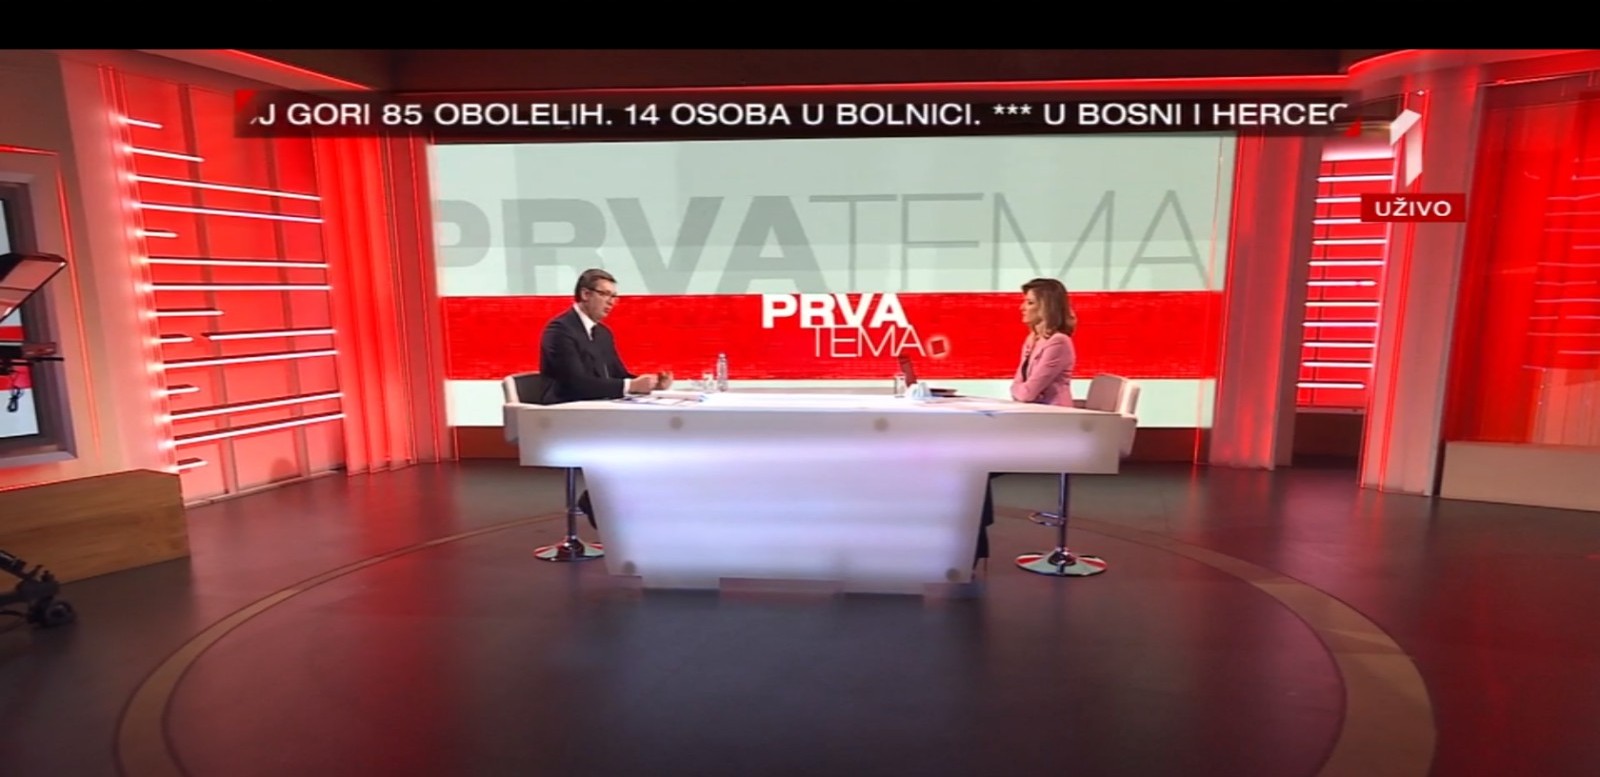 Predsednik Srbije Aleksandar Vucic u emisiji PRVA TEMA na TV Prva, povodom sadasnje situacije u Srbije zbog pandemije korona virusa.